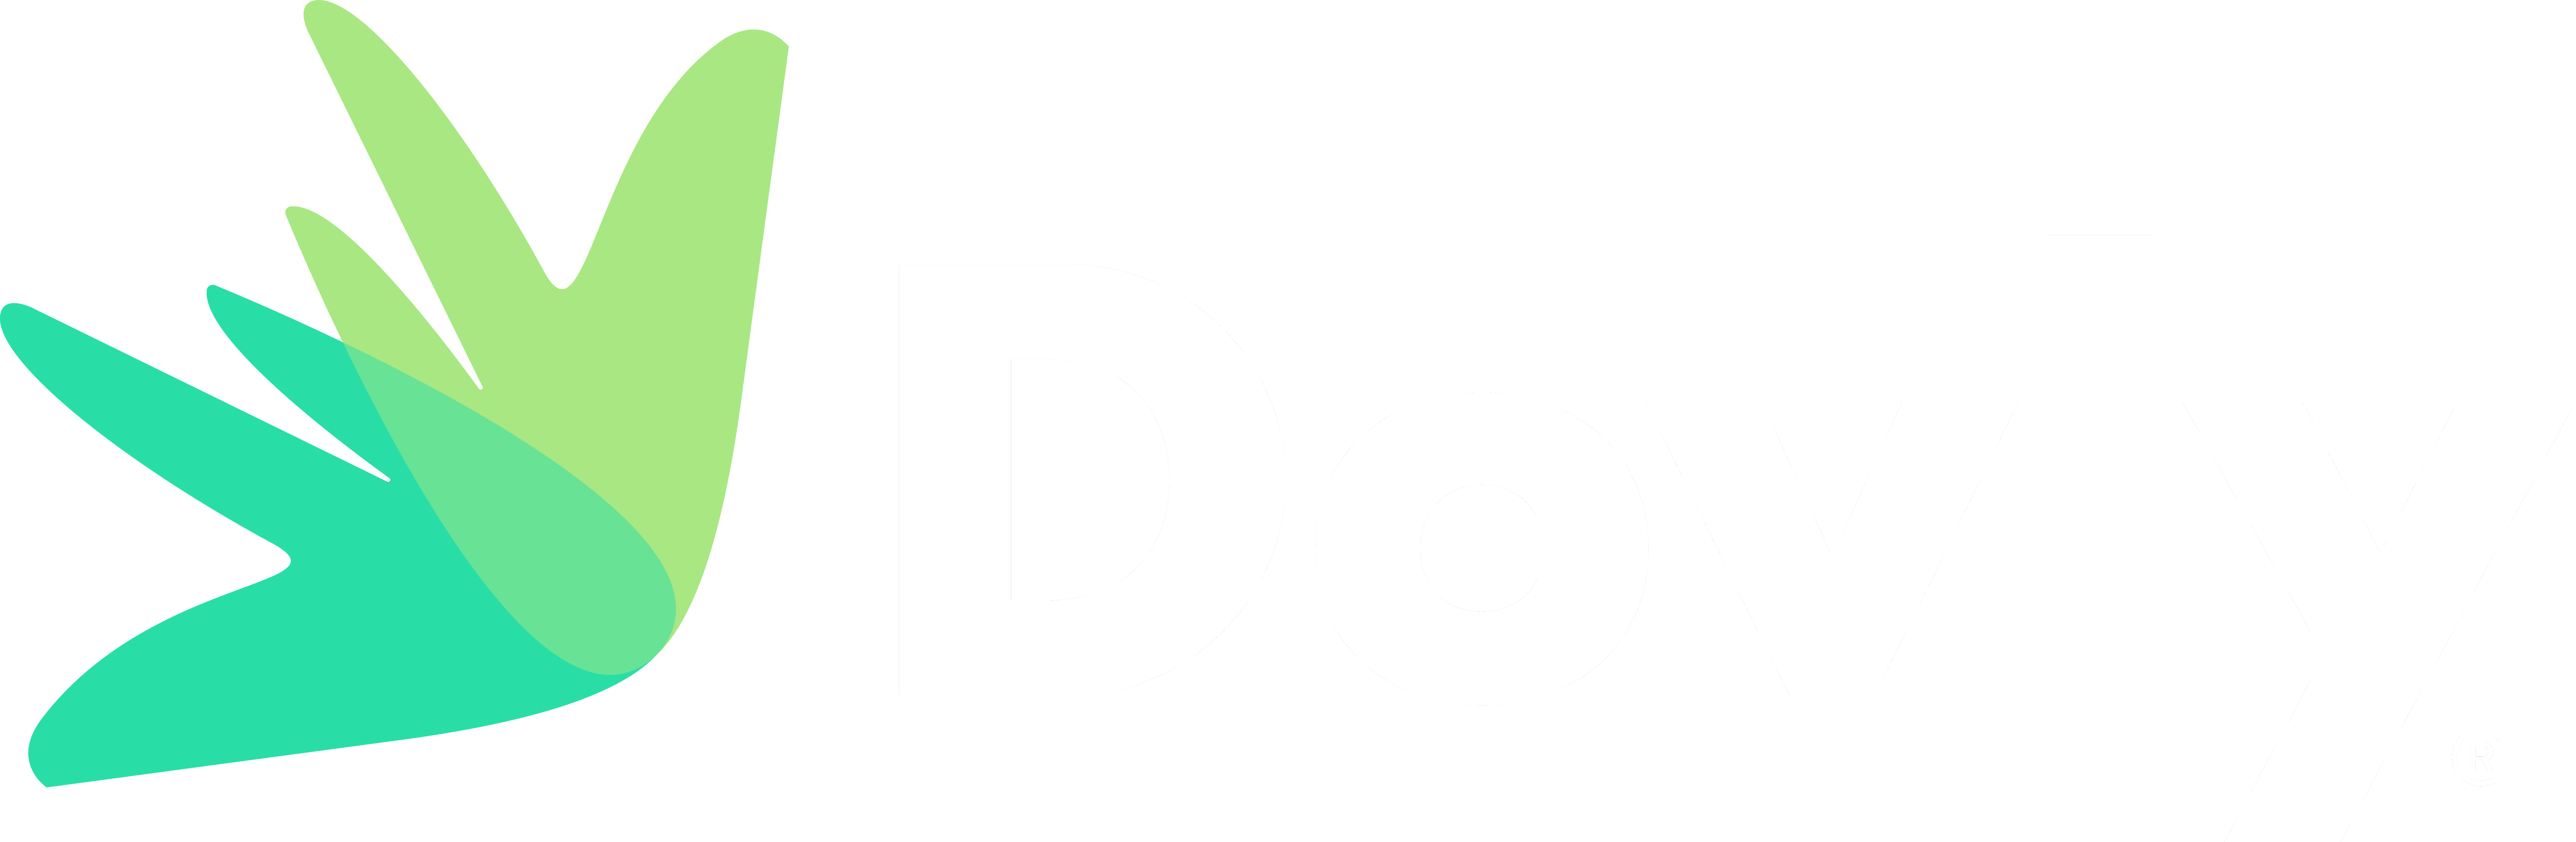 Dovly logo